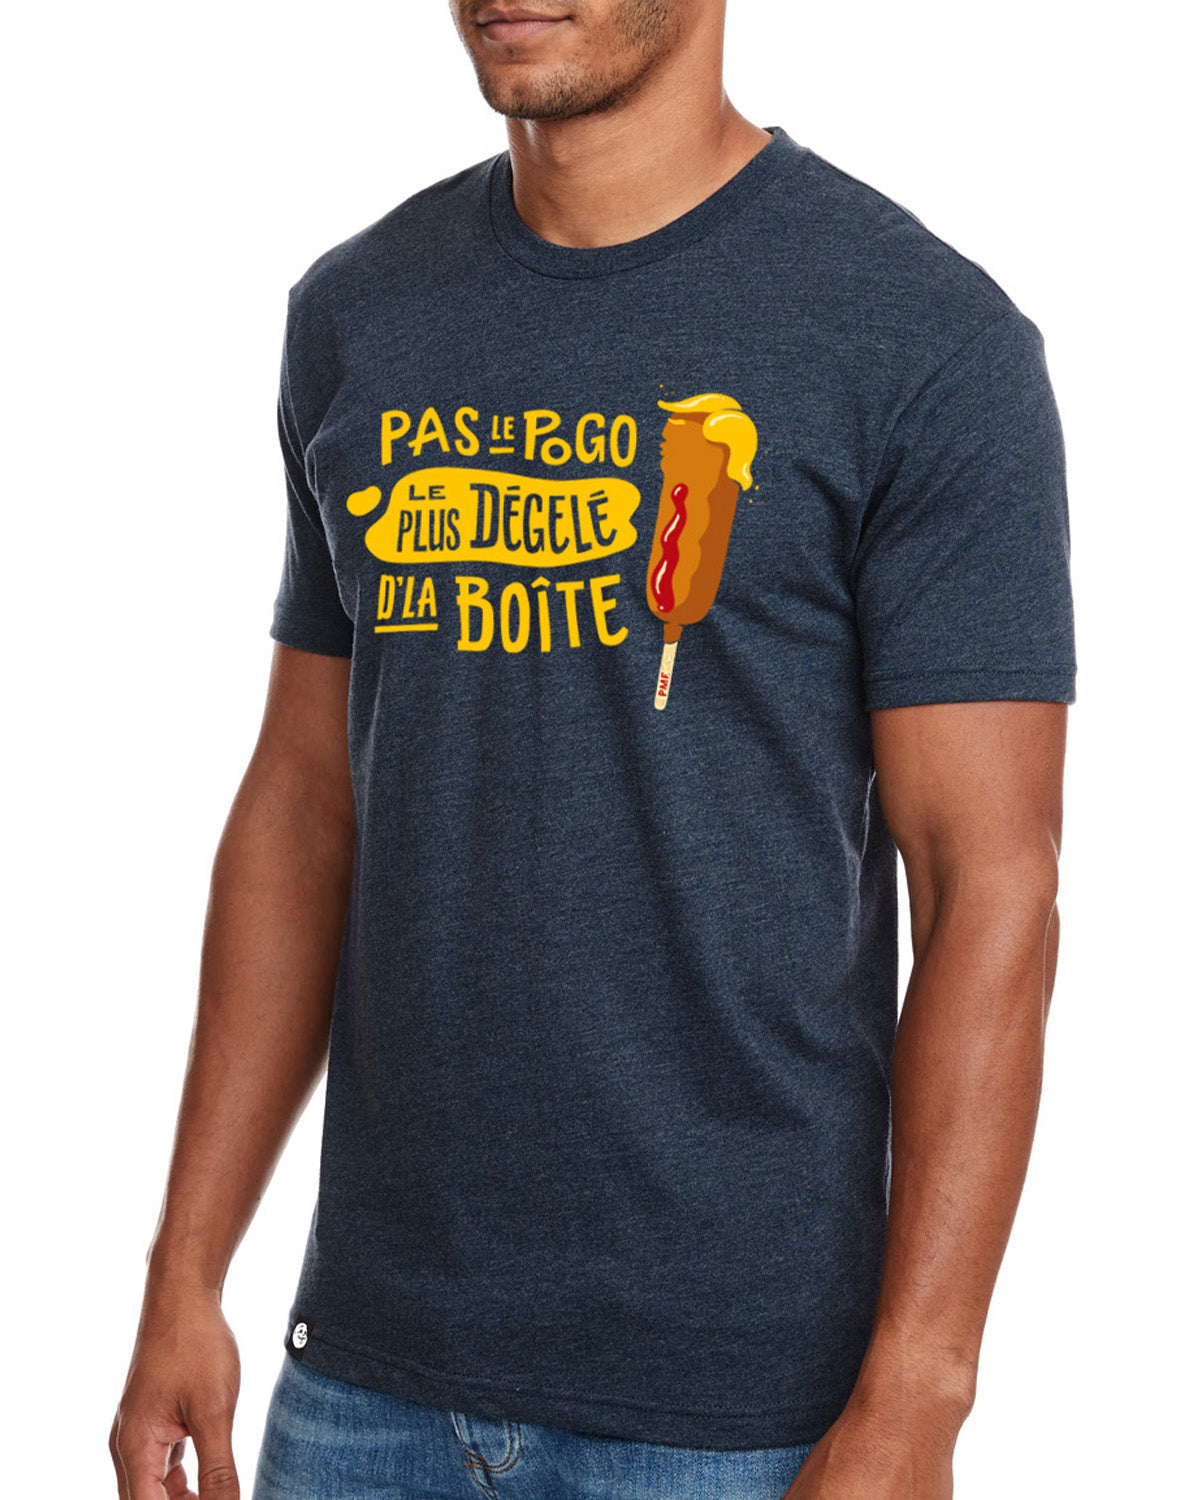 Phoque Apparel - T-Shirt : Navy “Pas le pogo le plus dégelé de la boîte“